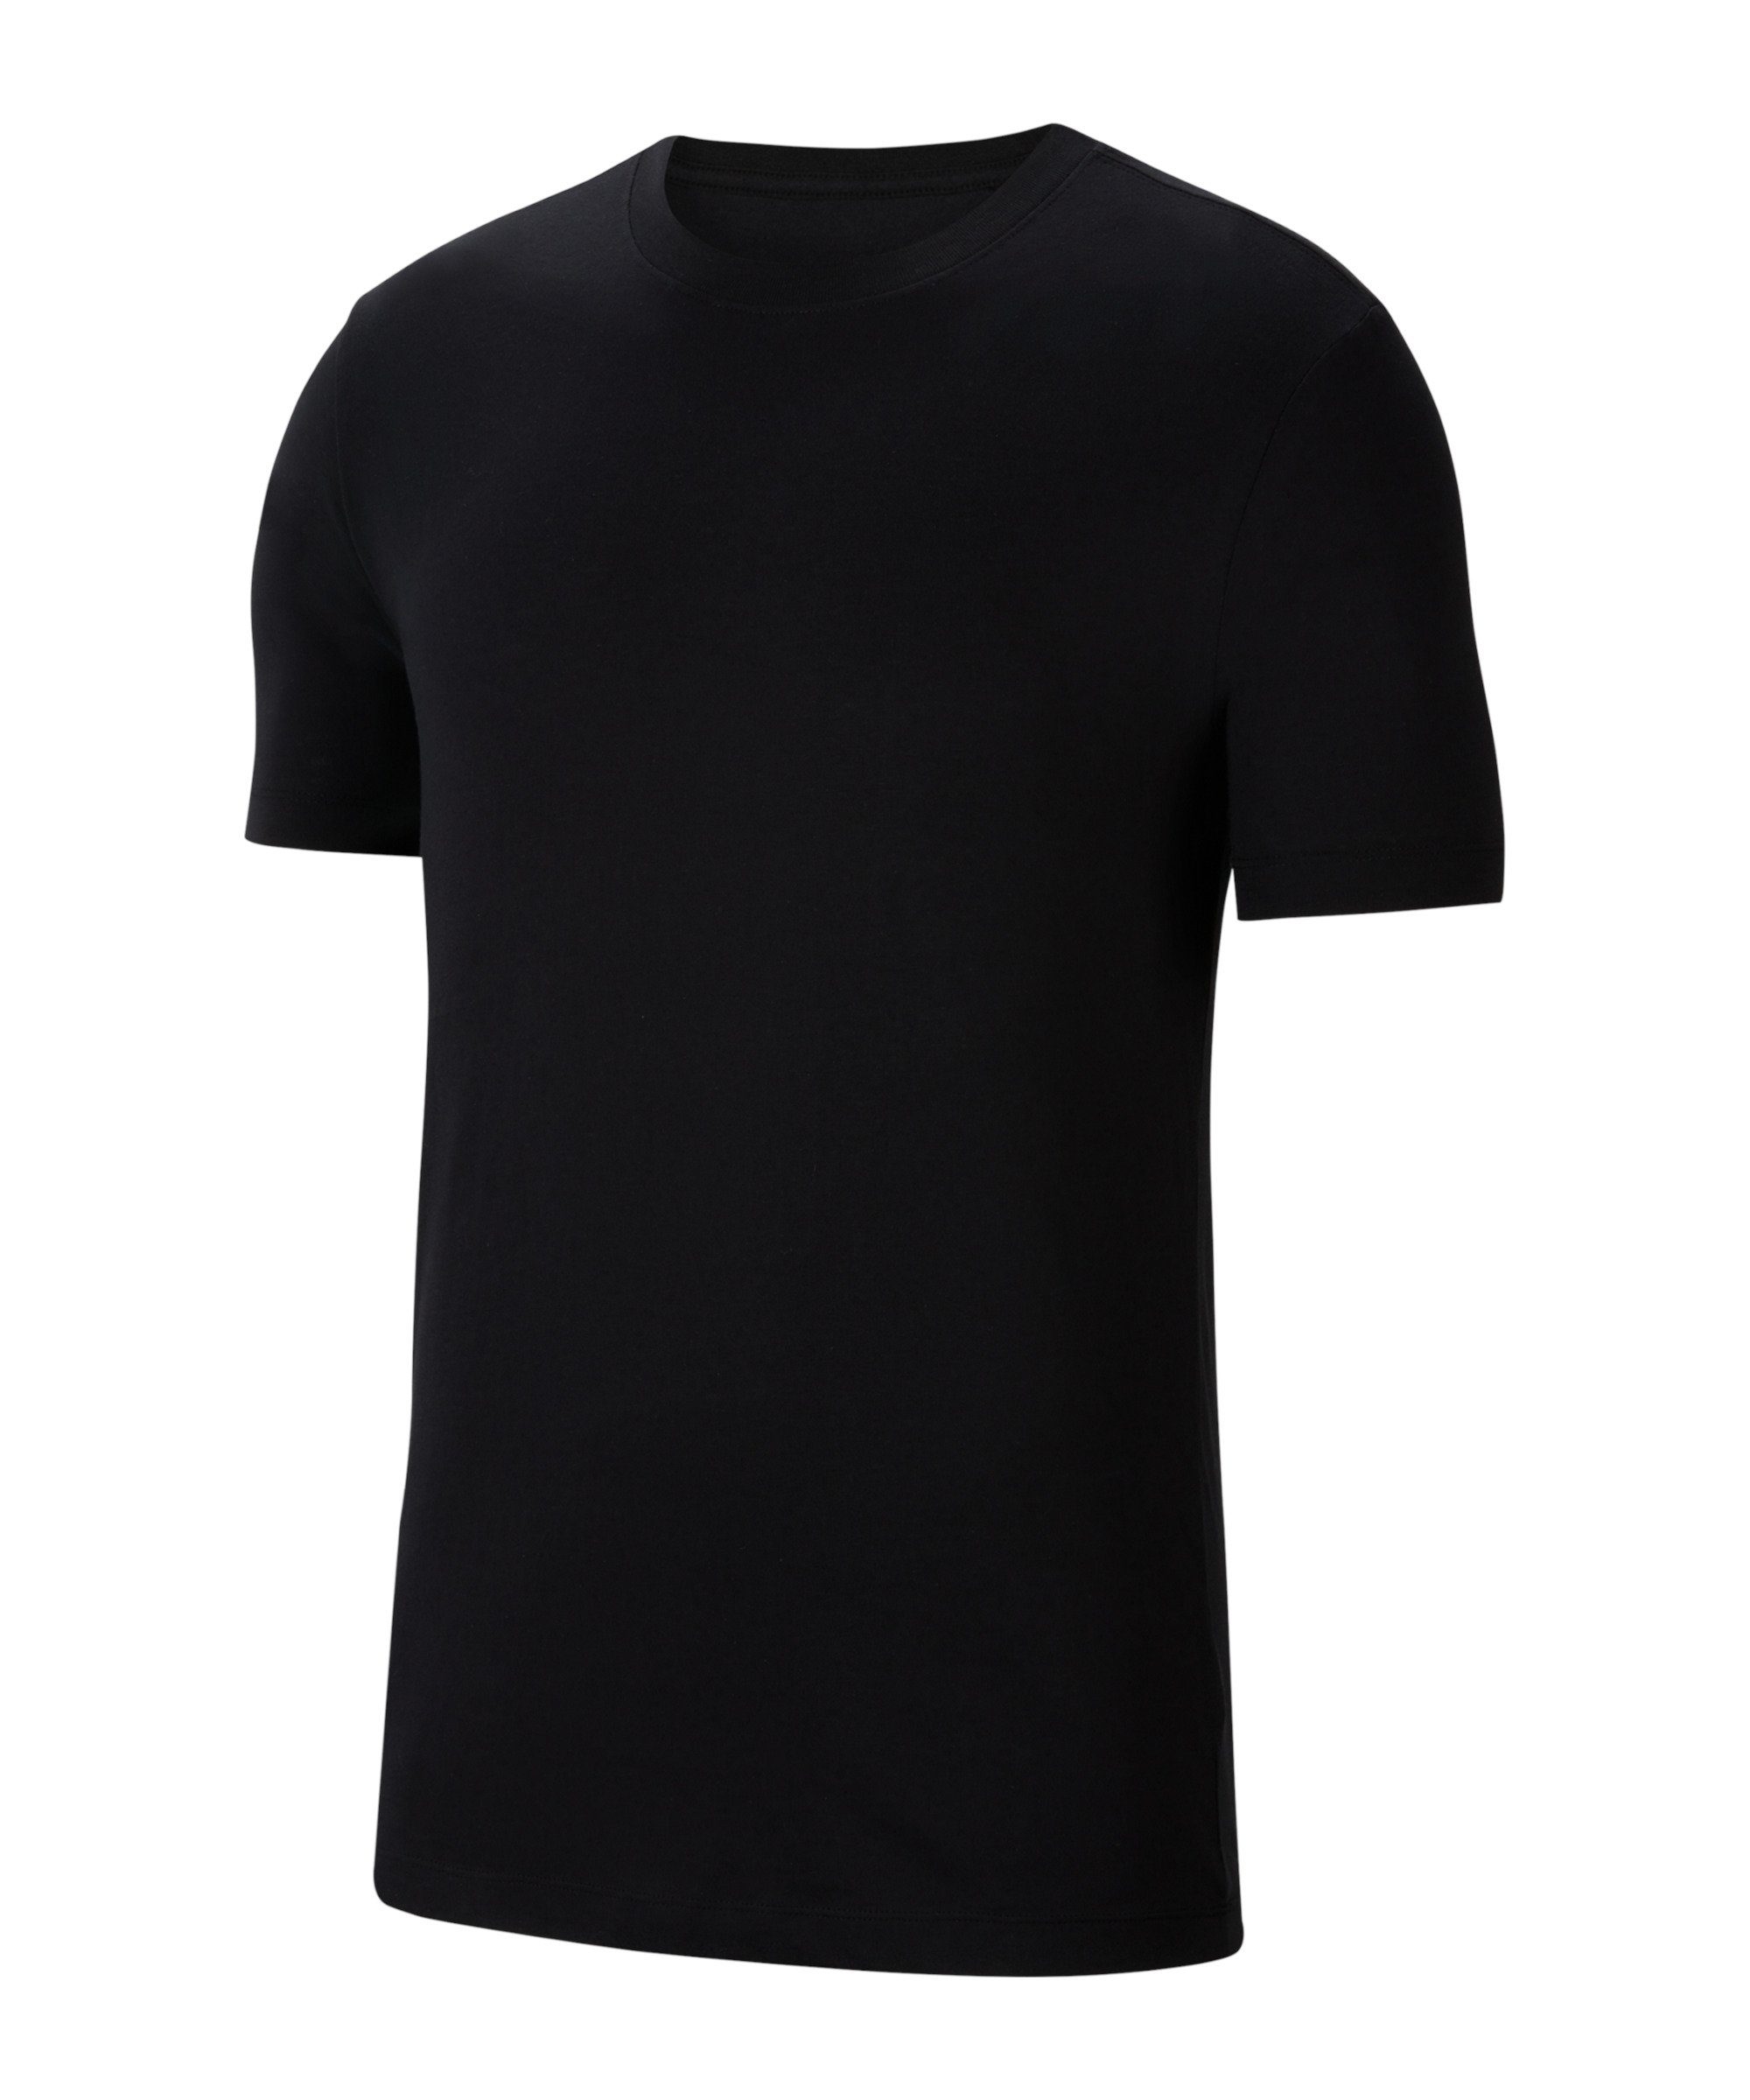 T-Shirt 20 default schwarzweiss Park T-Shirt Nike